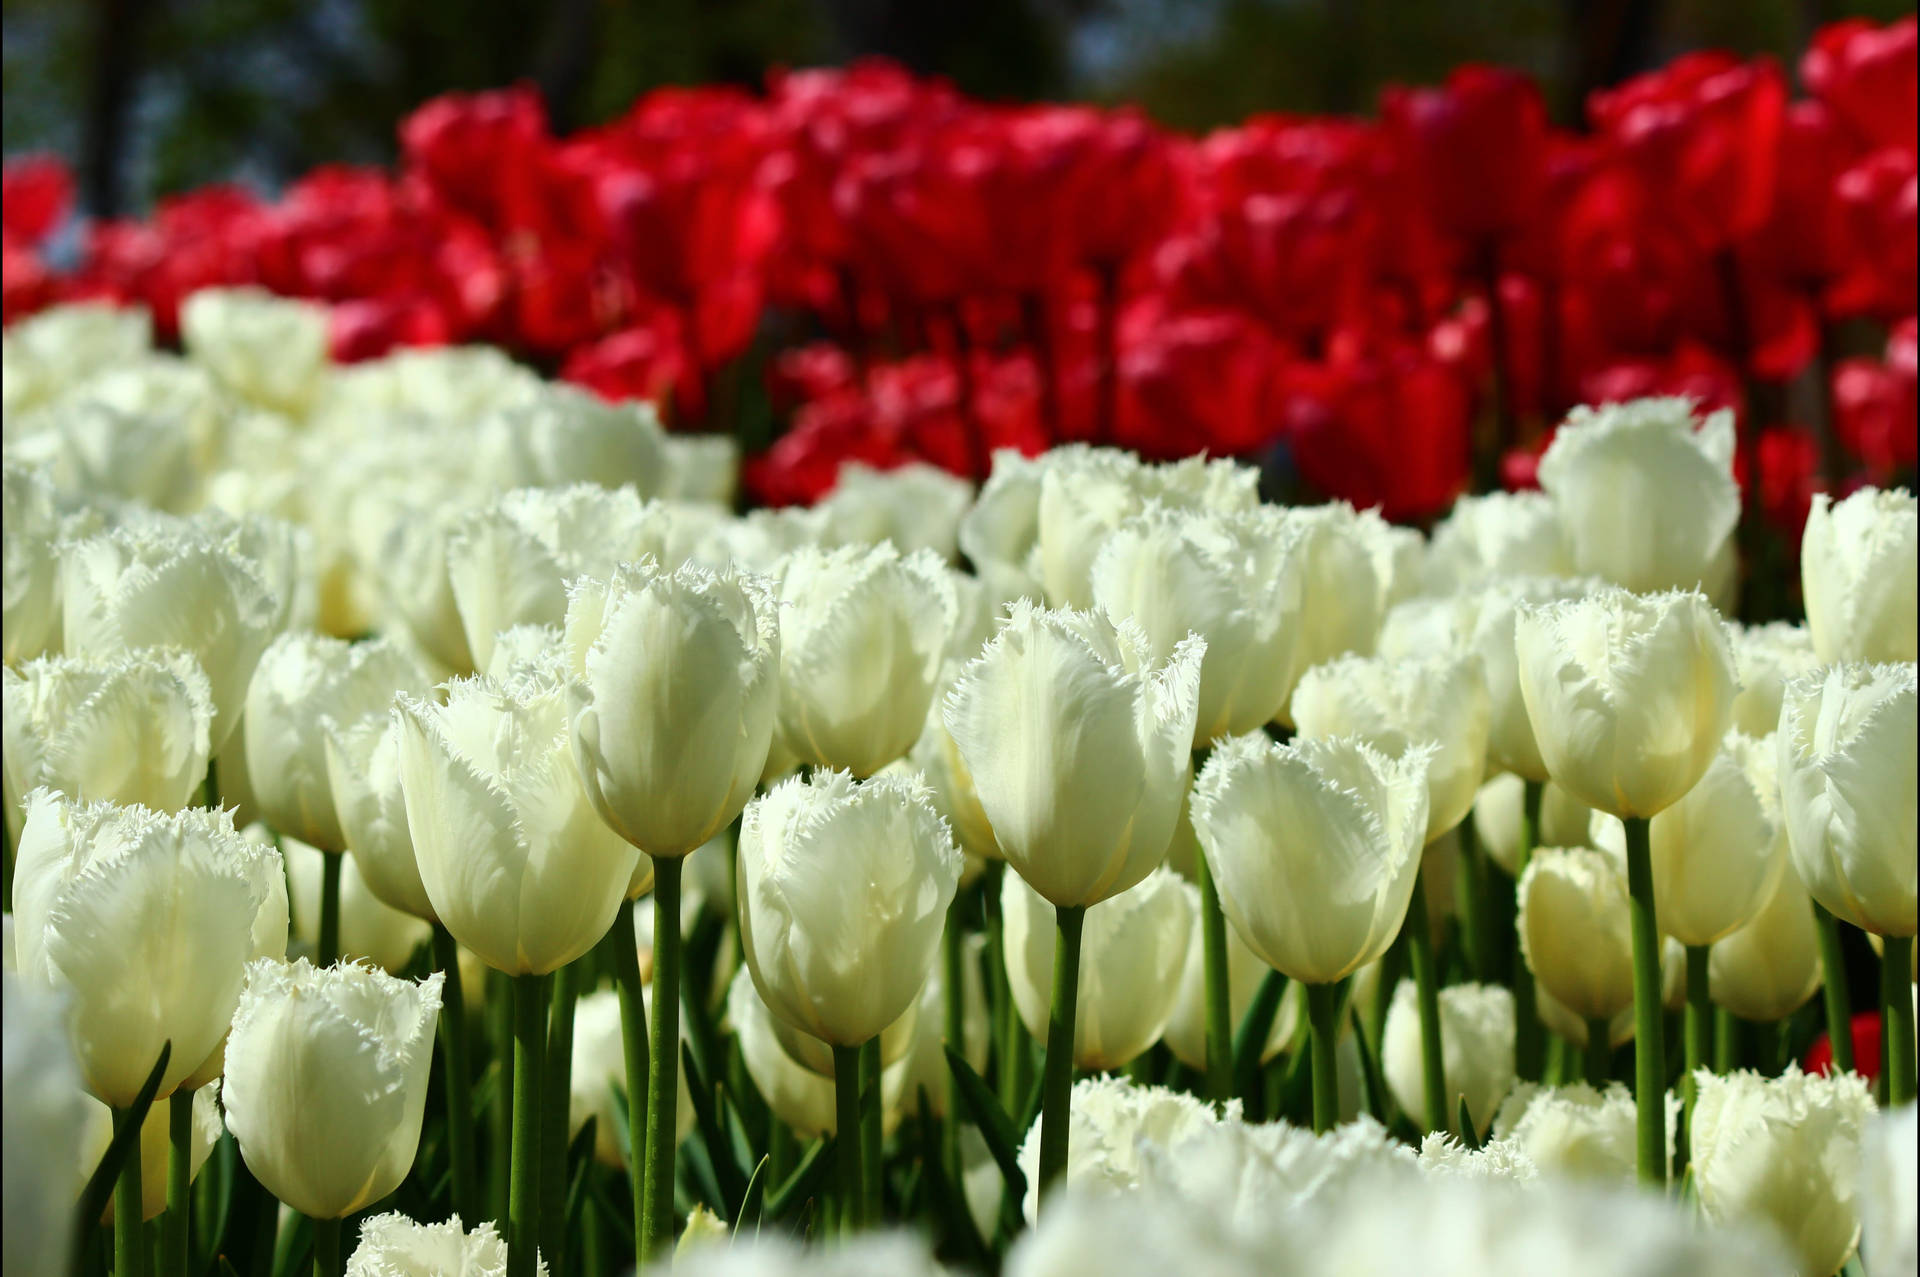 Konya Red And White Tulips